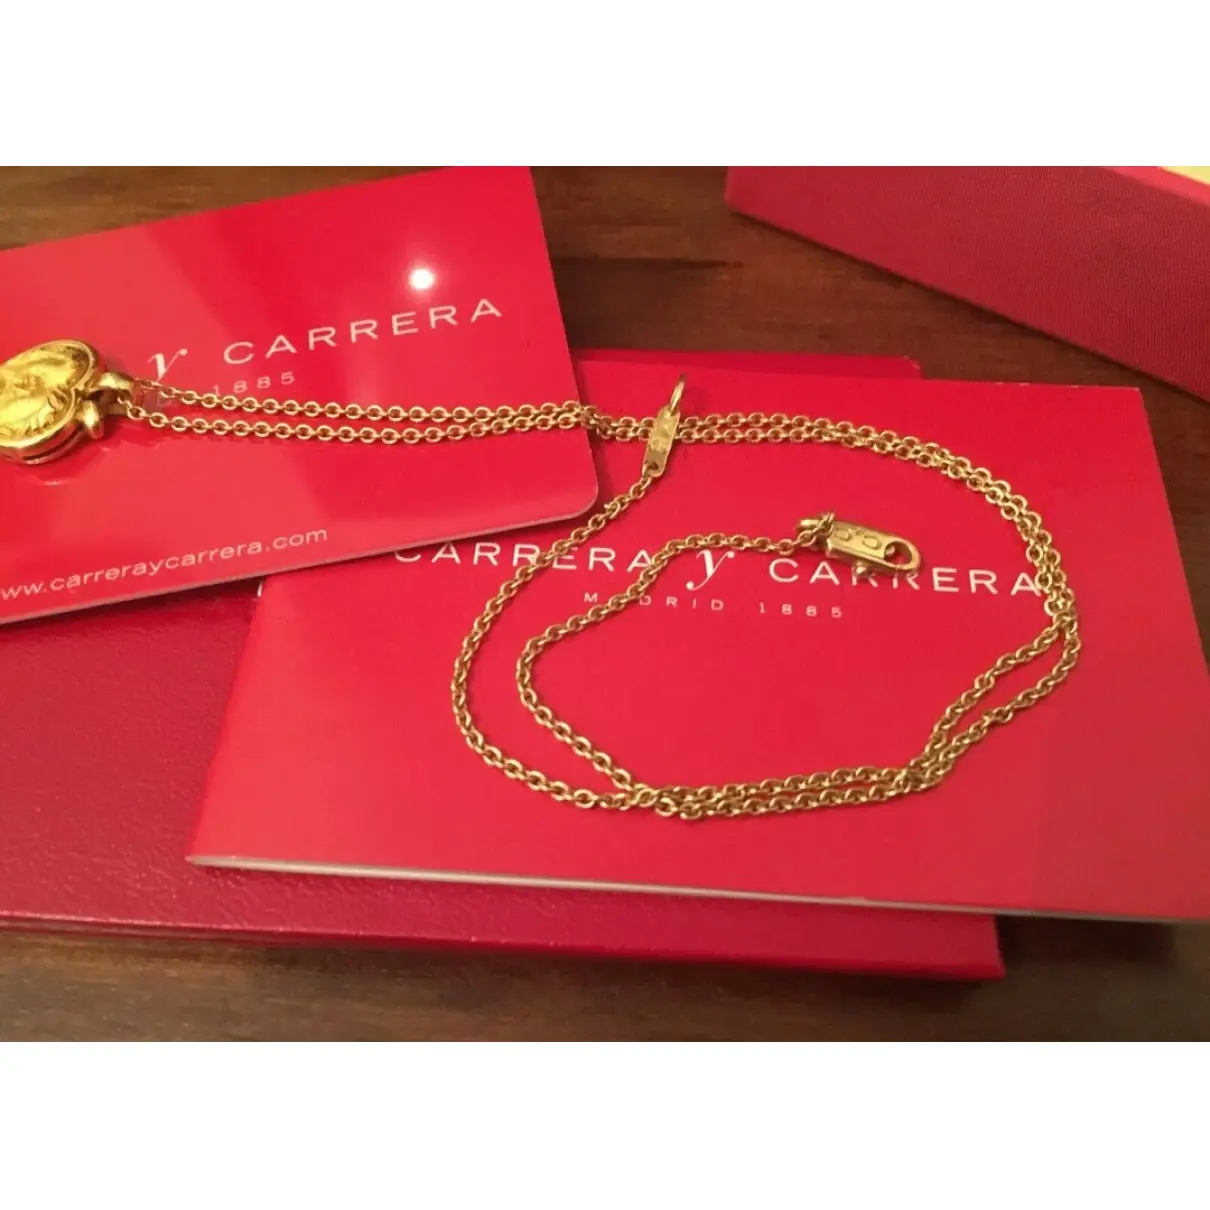 Luxury Carrera Y Carrera Necklaces Women